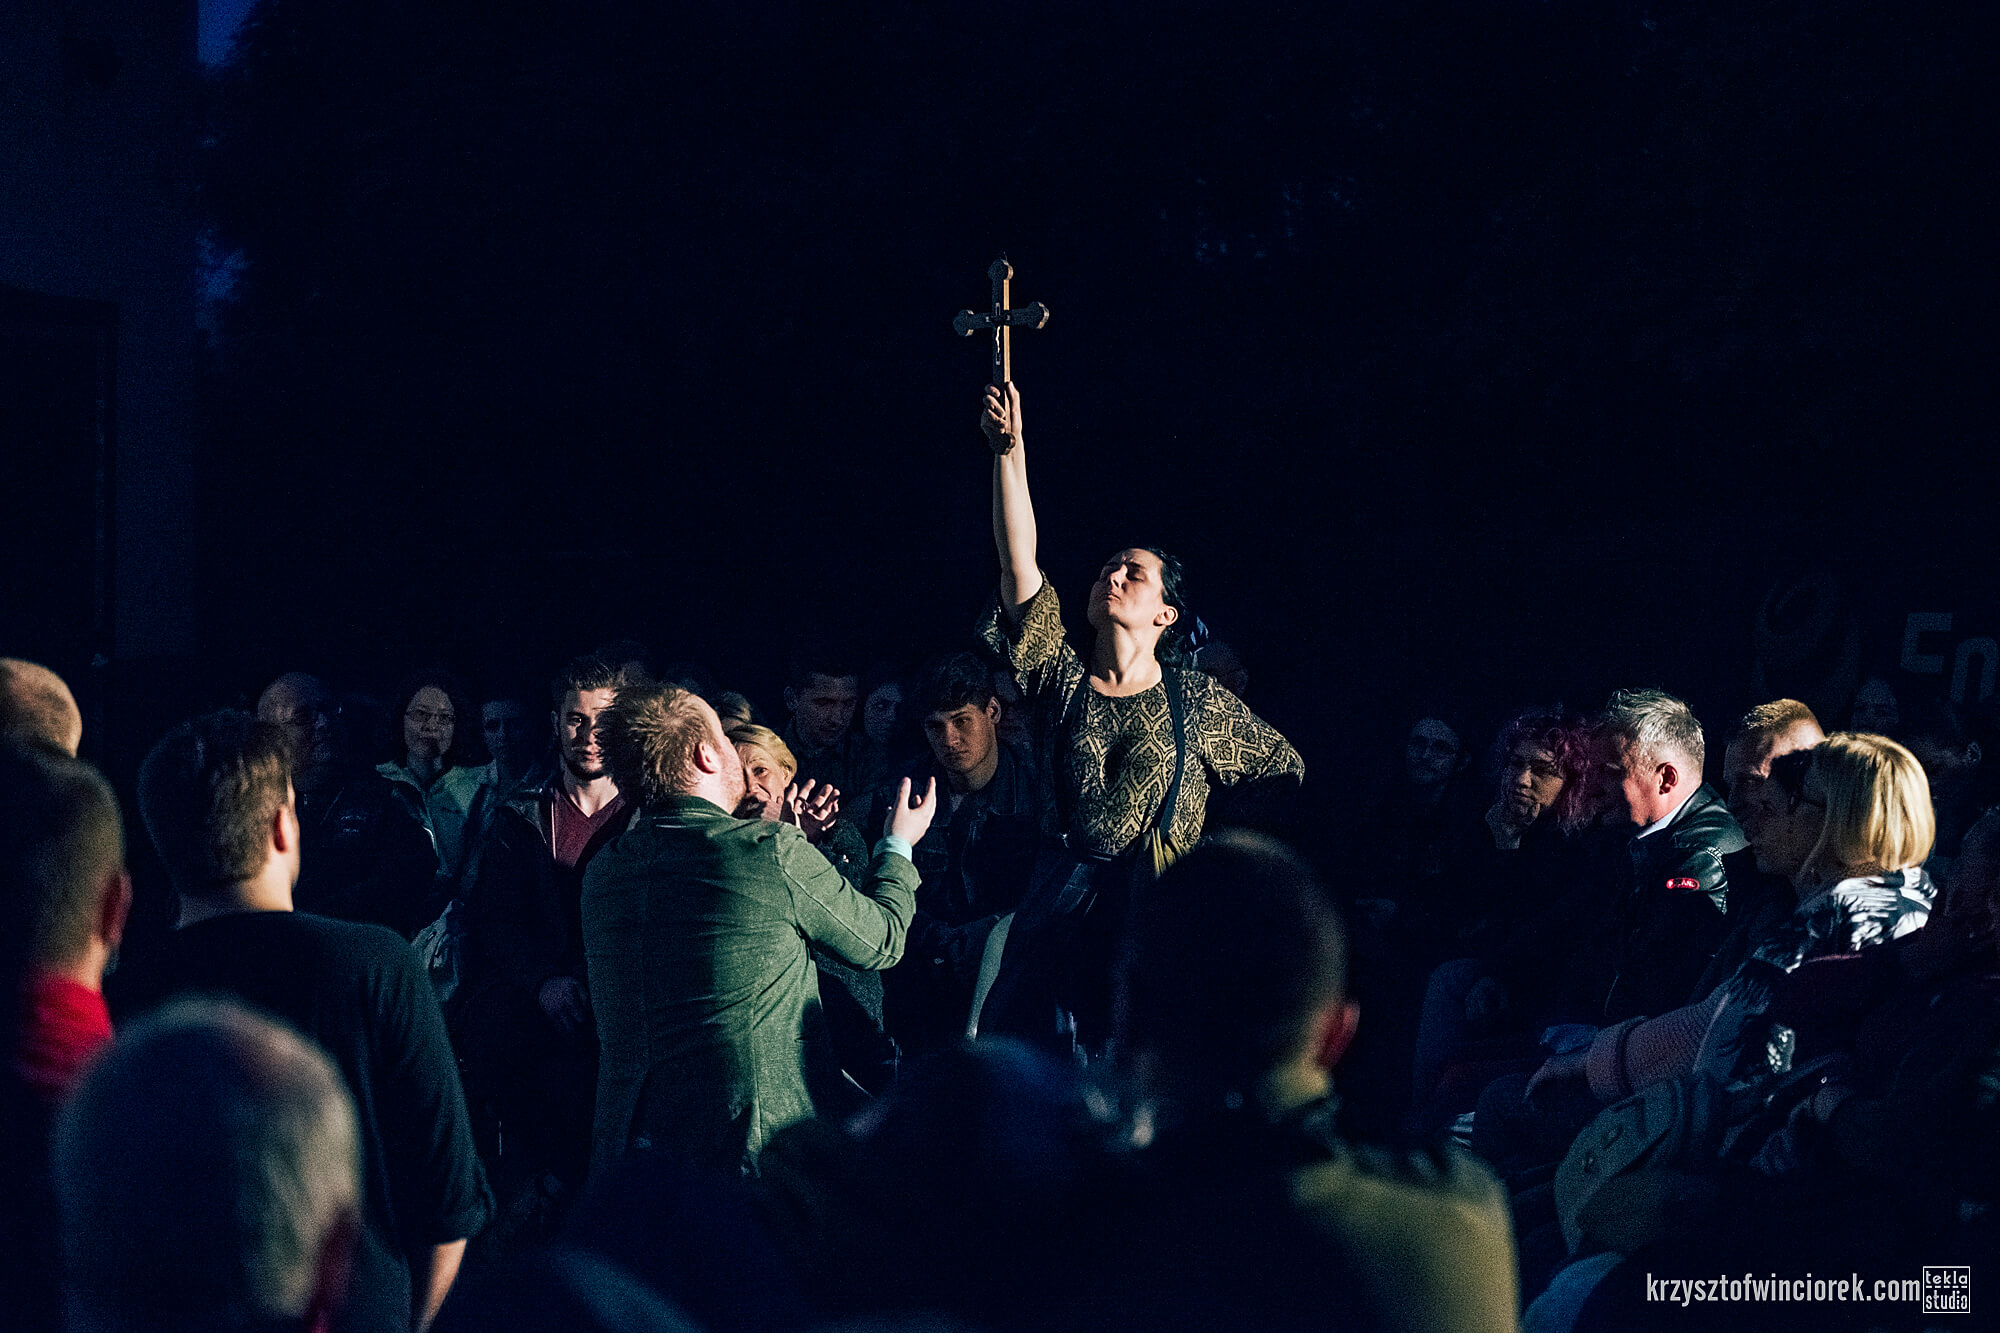 Zdjęcie z festiwalu Pociąg do miasta. Pośrodku tłumu aktorka podnosi rękę w której trzyma krzyż.